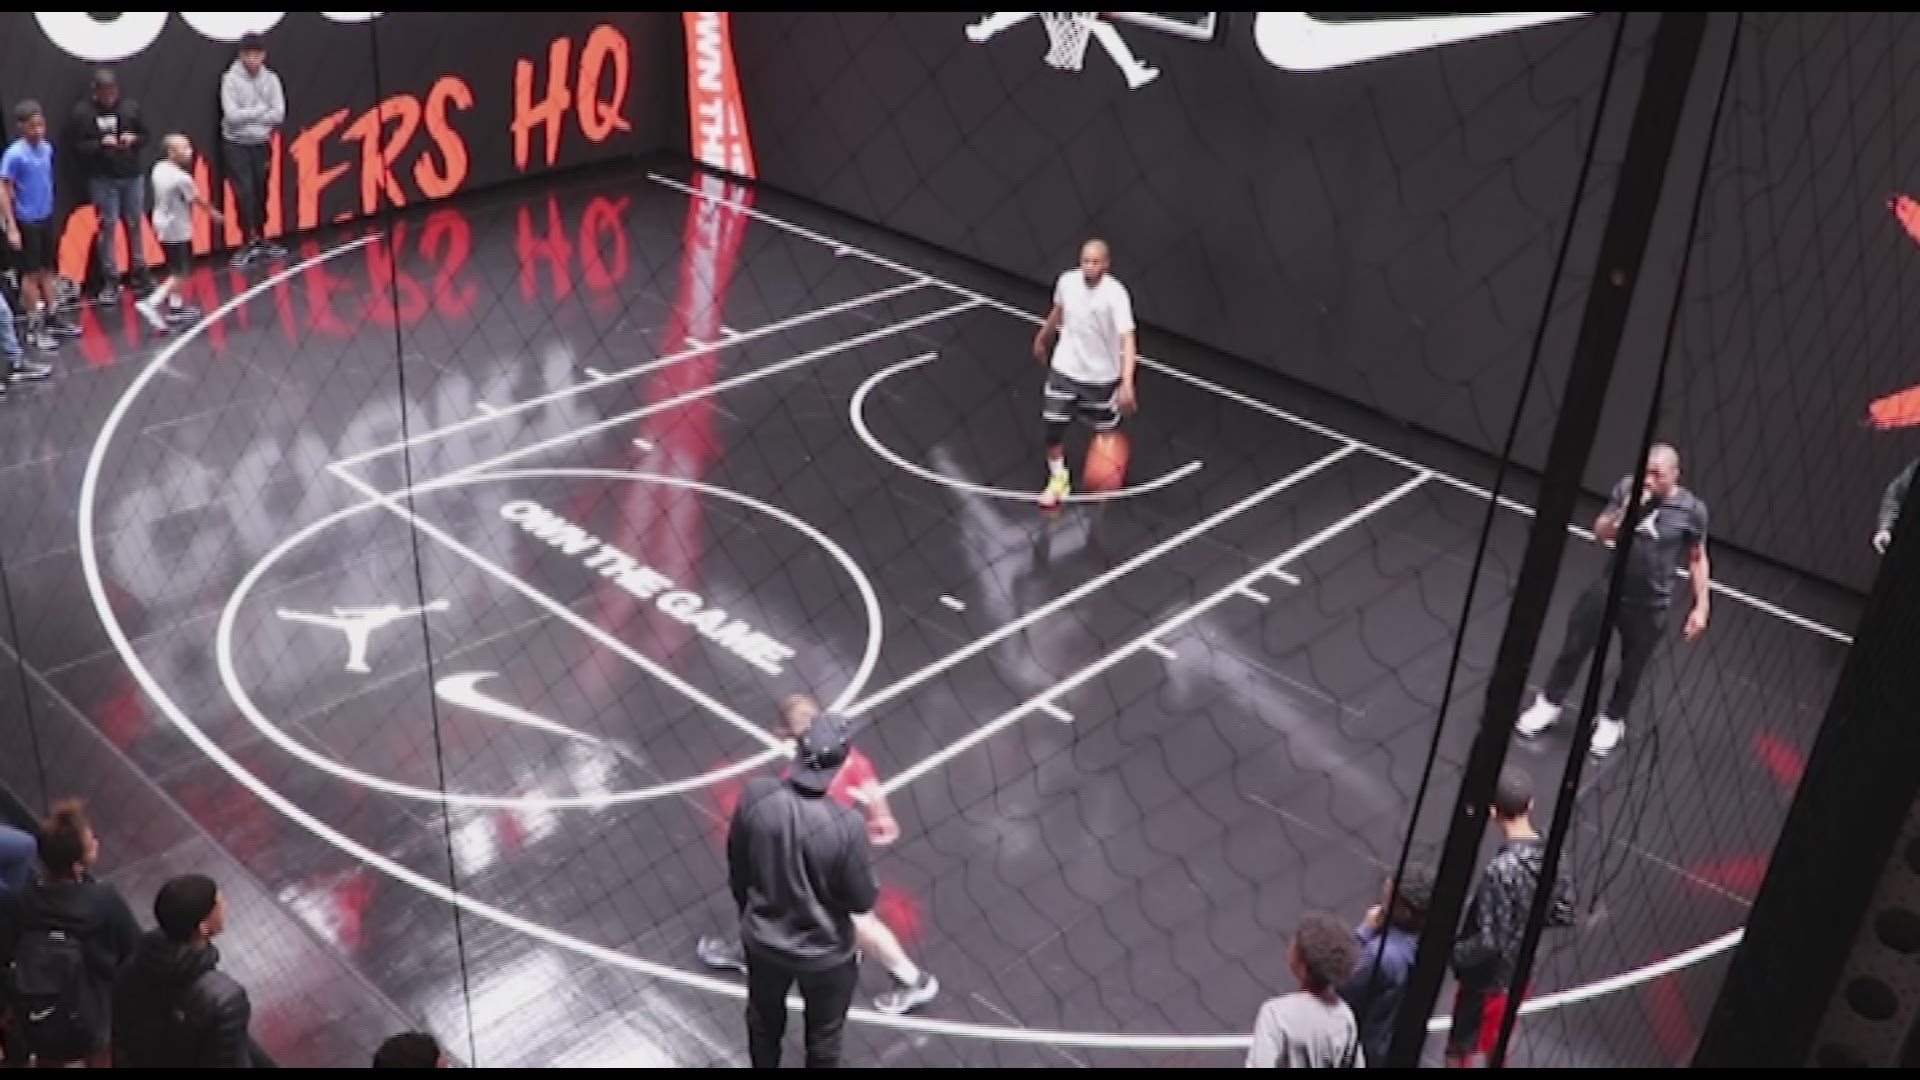 Giant Nike, Jordan pop-up shop in uptown Charlotte ahead of All-Star weekend